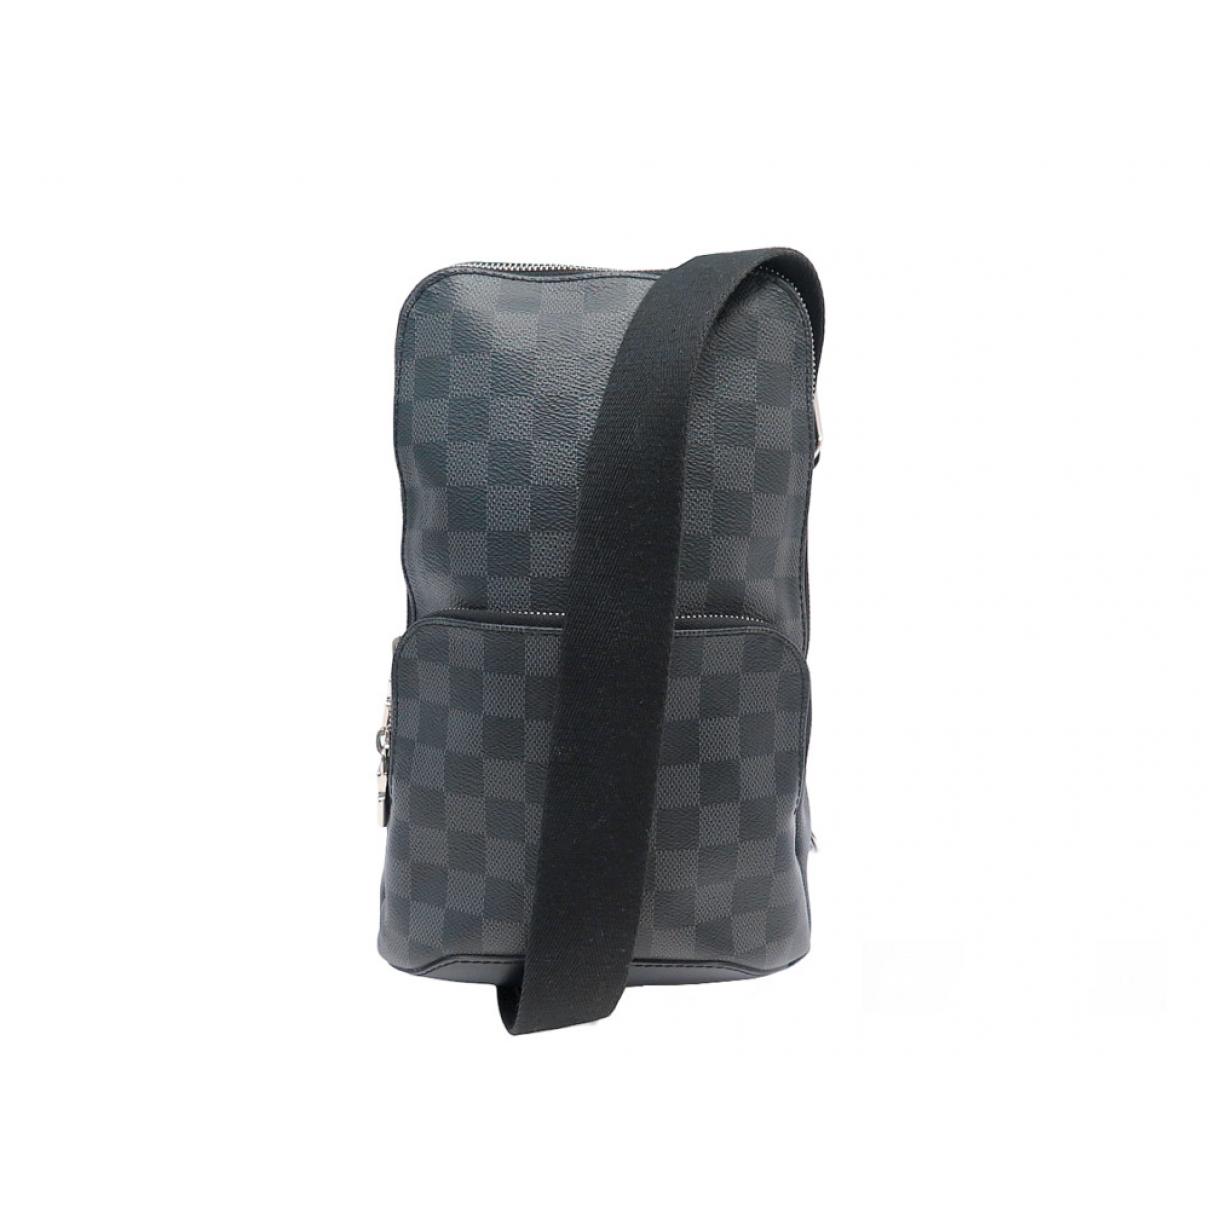 Avenue sling Louis Vuitton Bags for Men - Vestiaire Collective